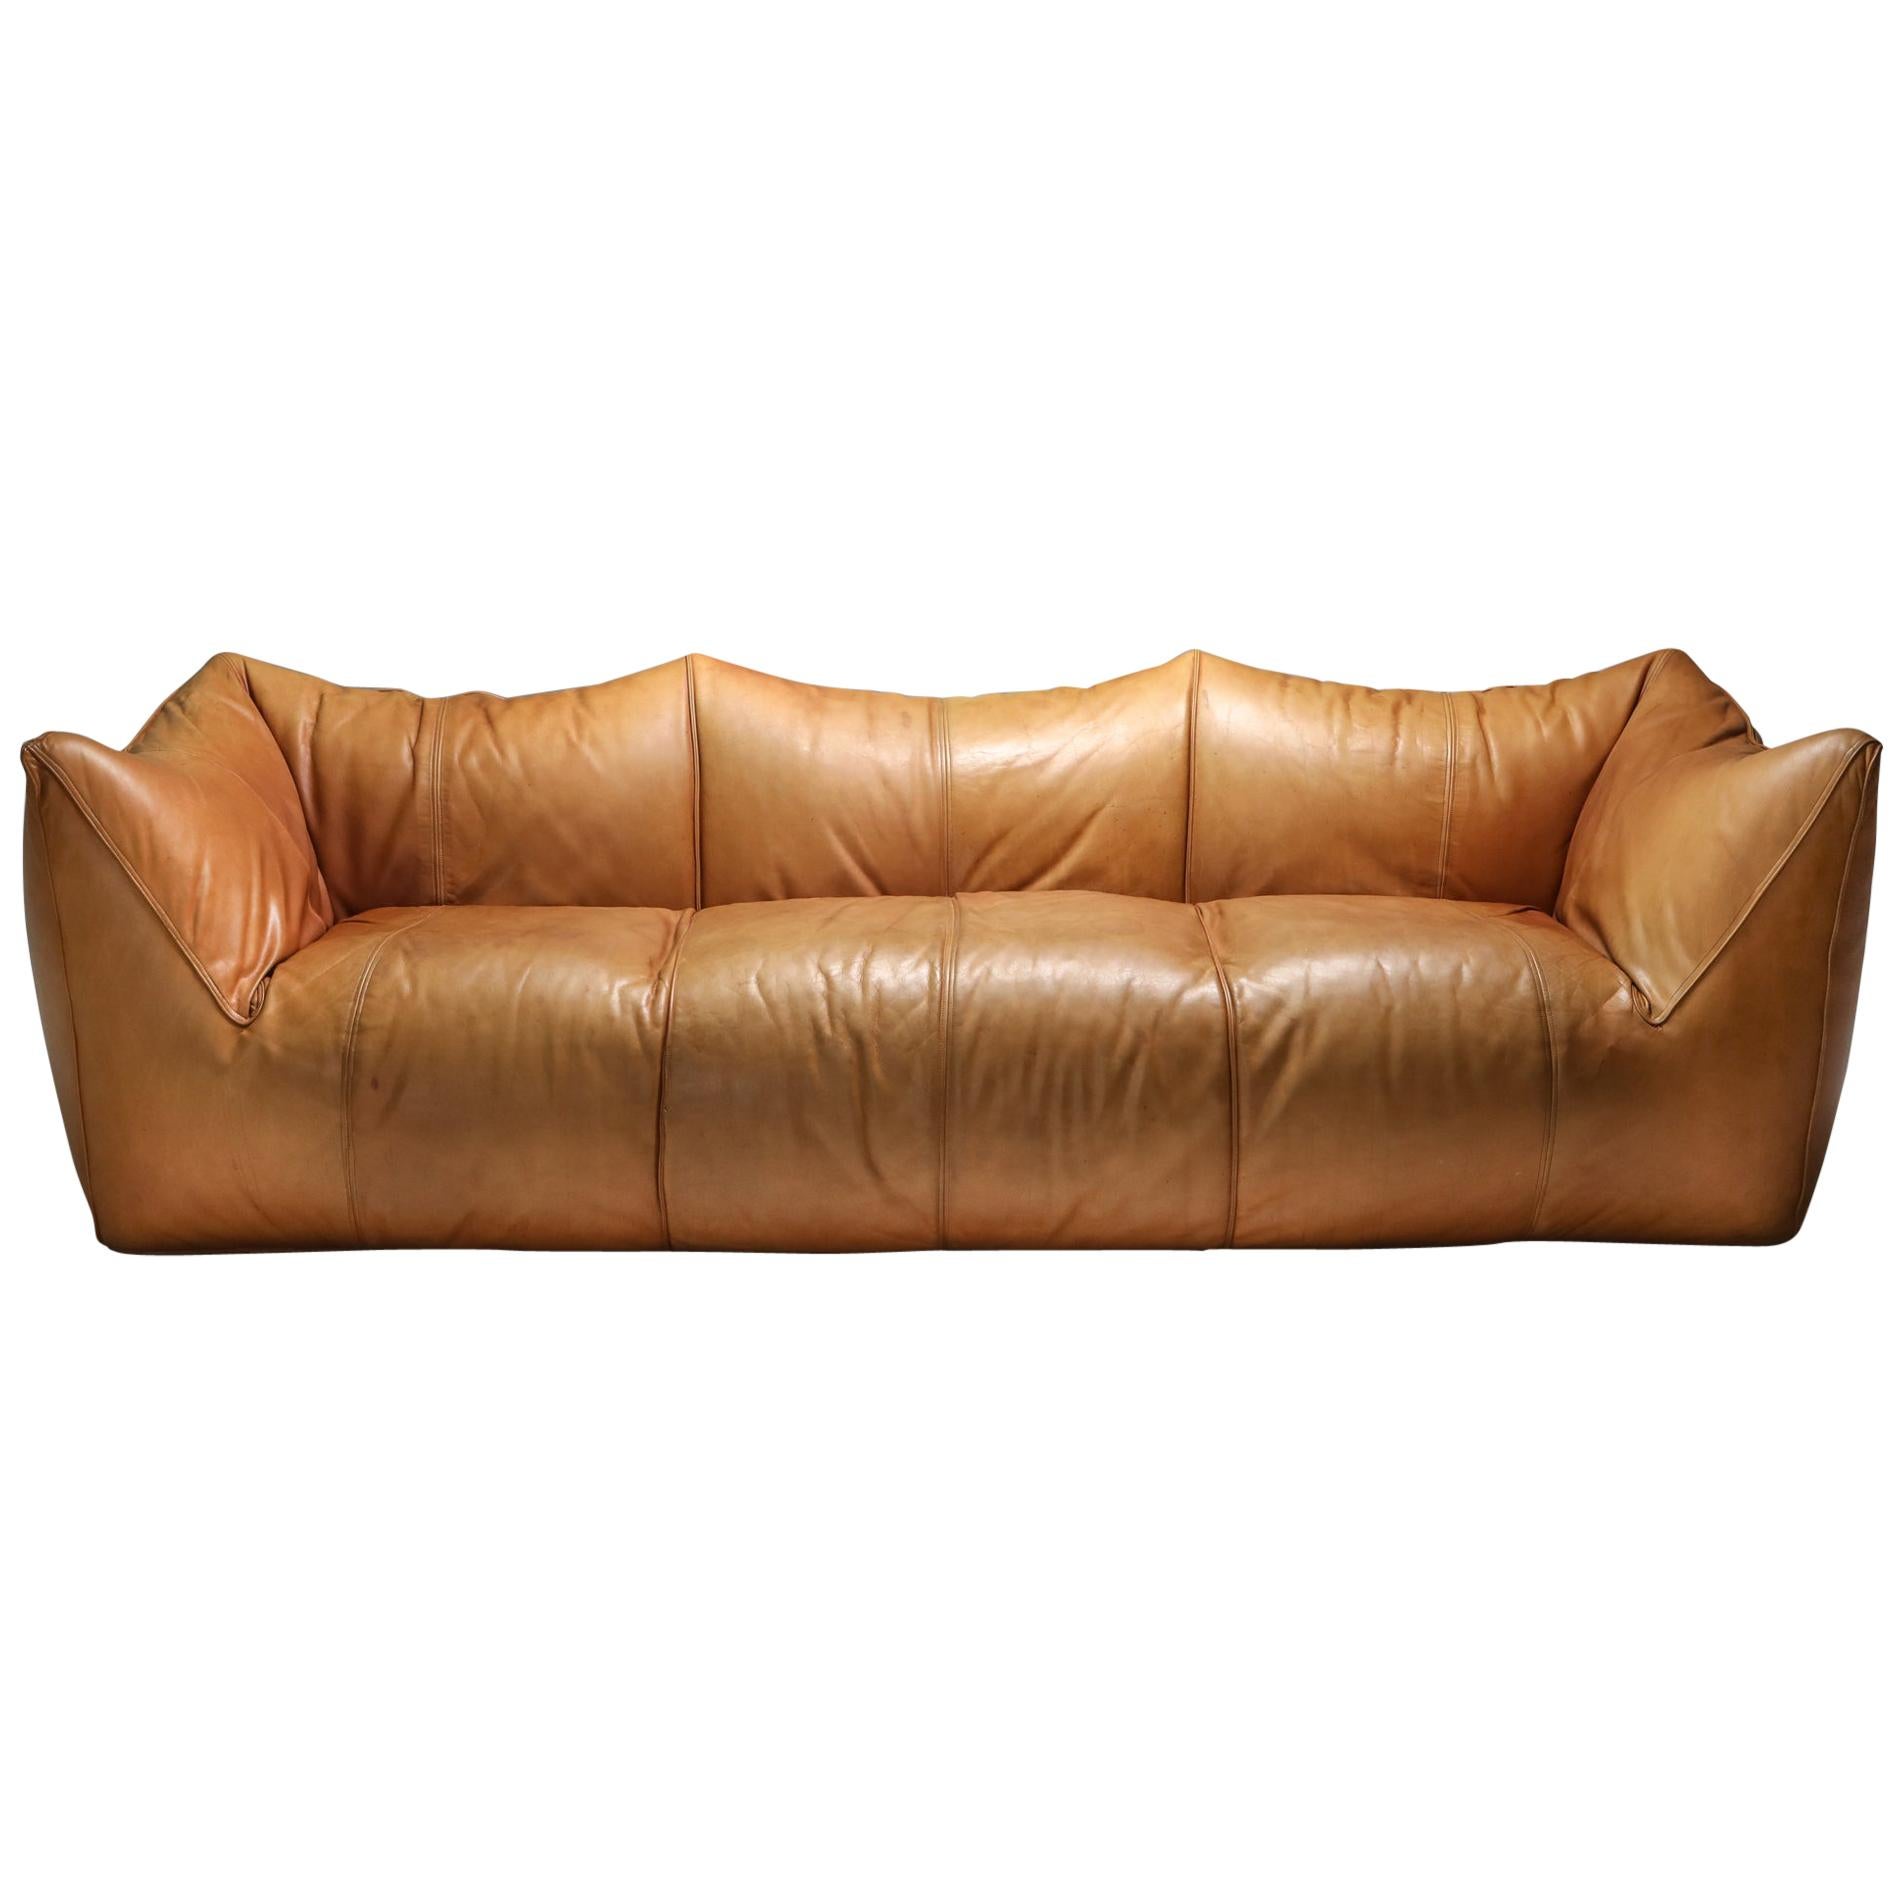 Mario Bellini 'Le Bambole' Three-Seat Couch in Tan Leather